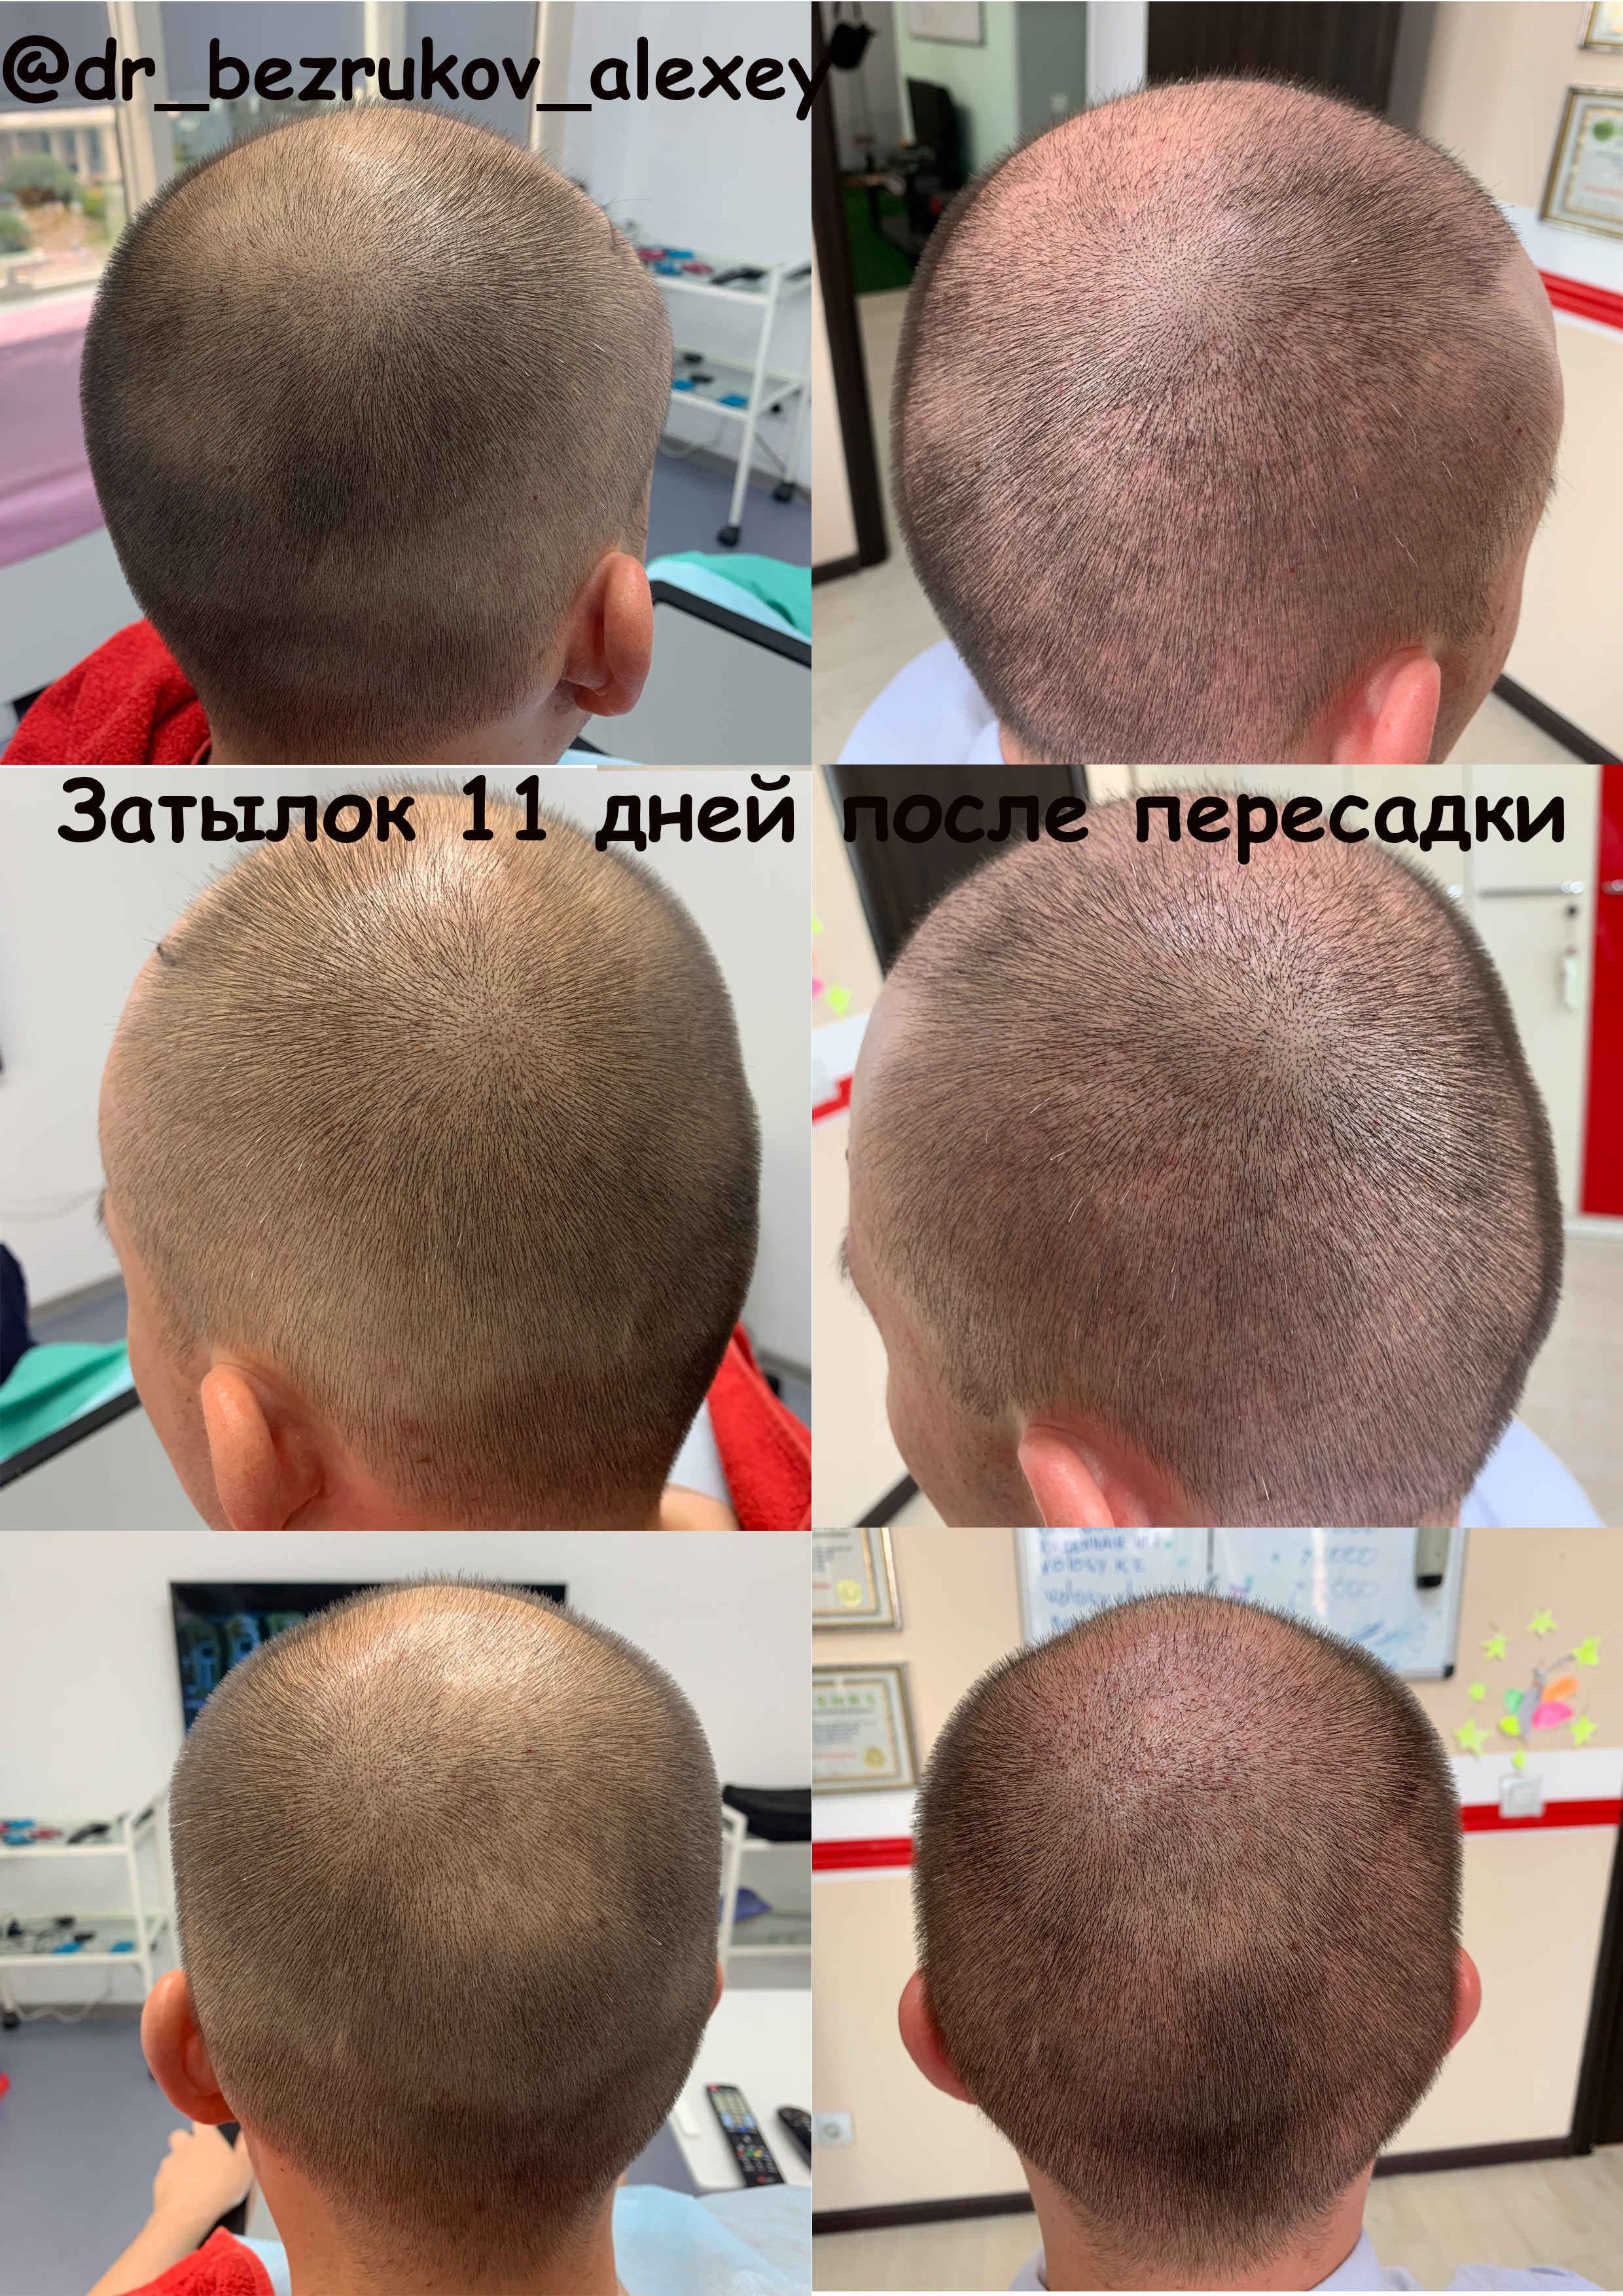 Донорская зона после пересадки. Трансплантация волос с затылка. До и после пересадки волос.